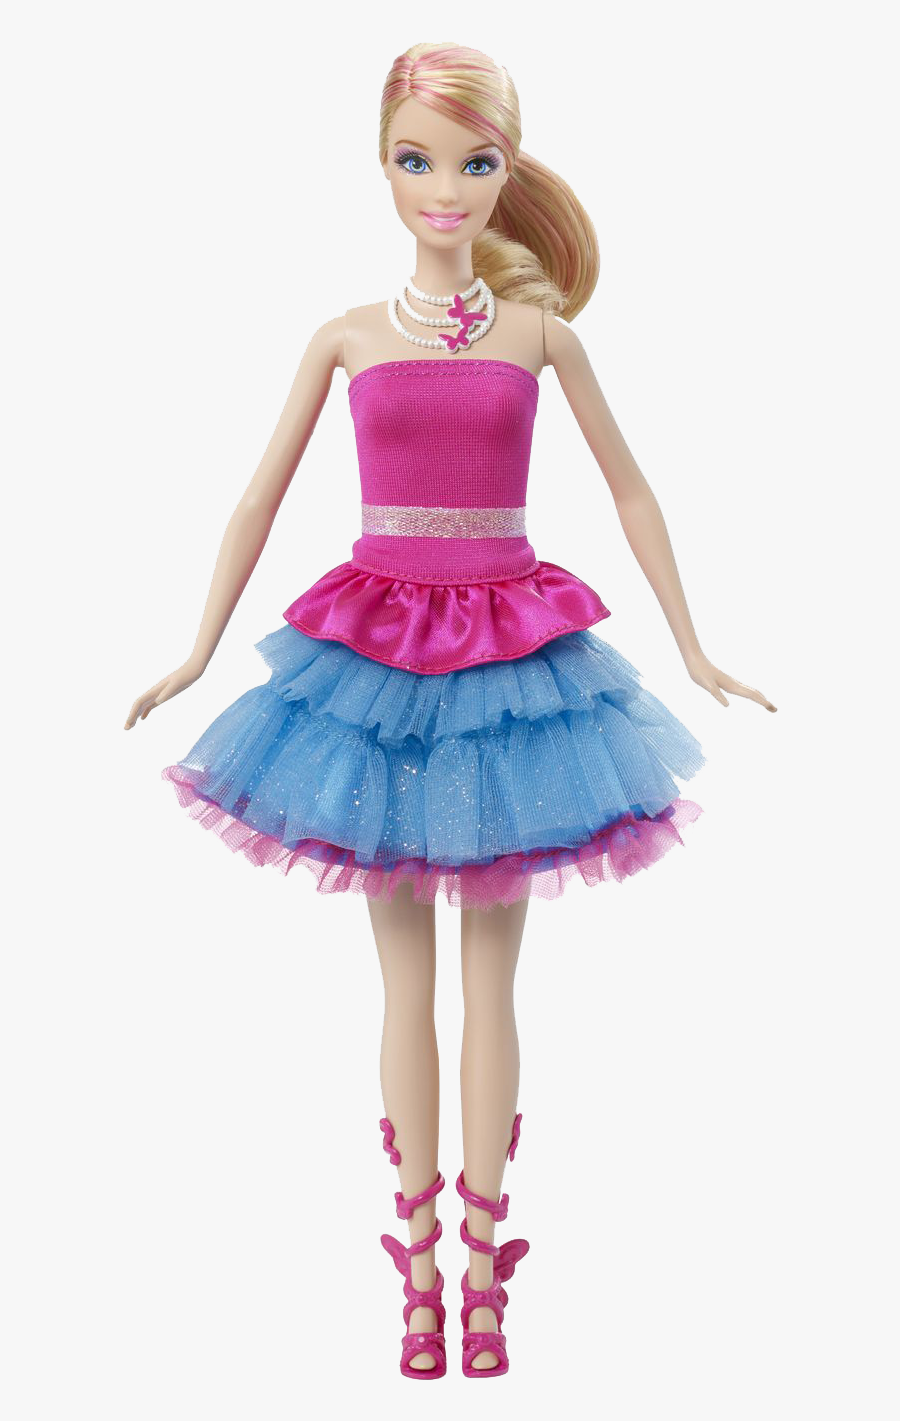 Barbie Doll Transparent Images Clip Art Library - Barbie Dolls With Wings, Transparent Clipart